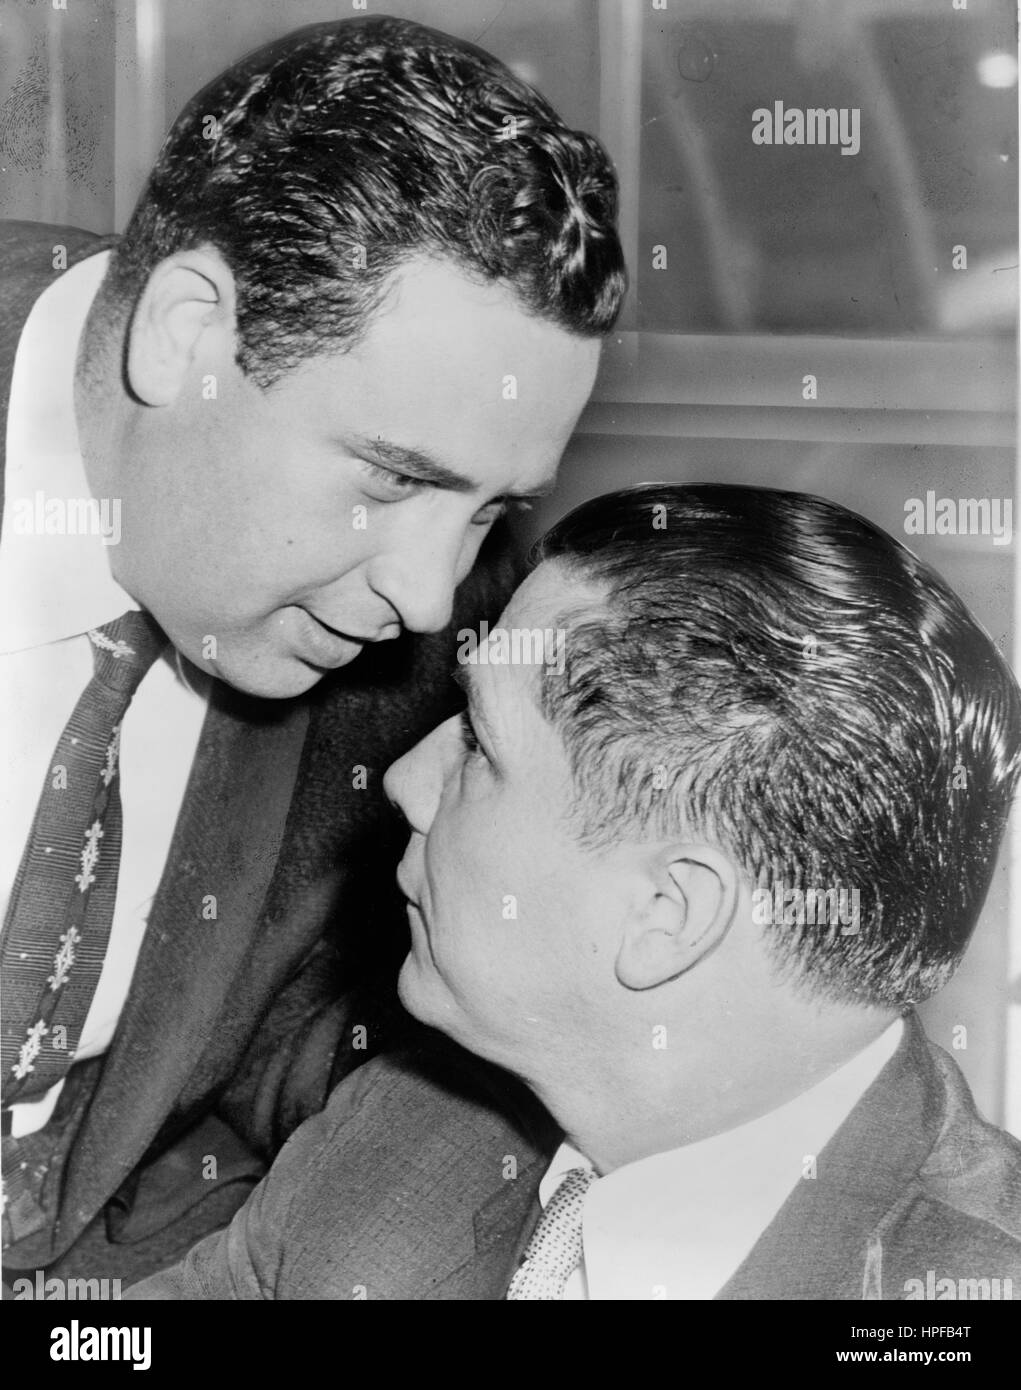 Expert d'écoute électronique Bernard Spindel chuchote à l'oreille de James R. Hoffa après la session de la cour dans laquelle ils ont plaidé innocent à l'écoute illégale accusations, New York, NY, 1957. Banque D'Images